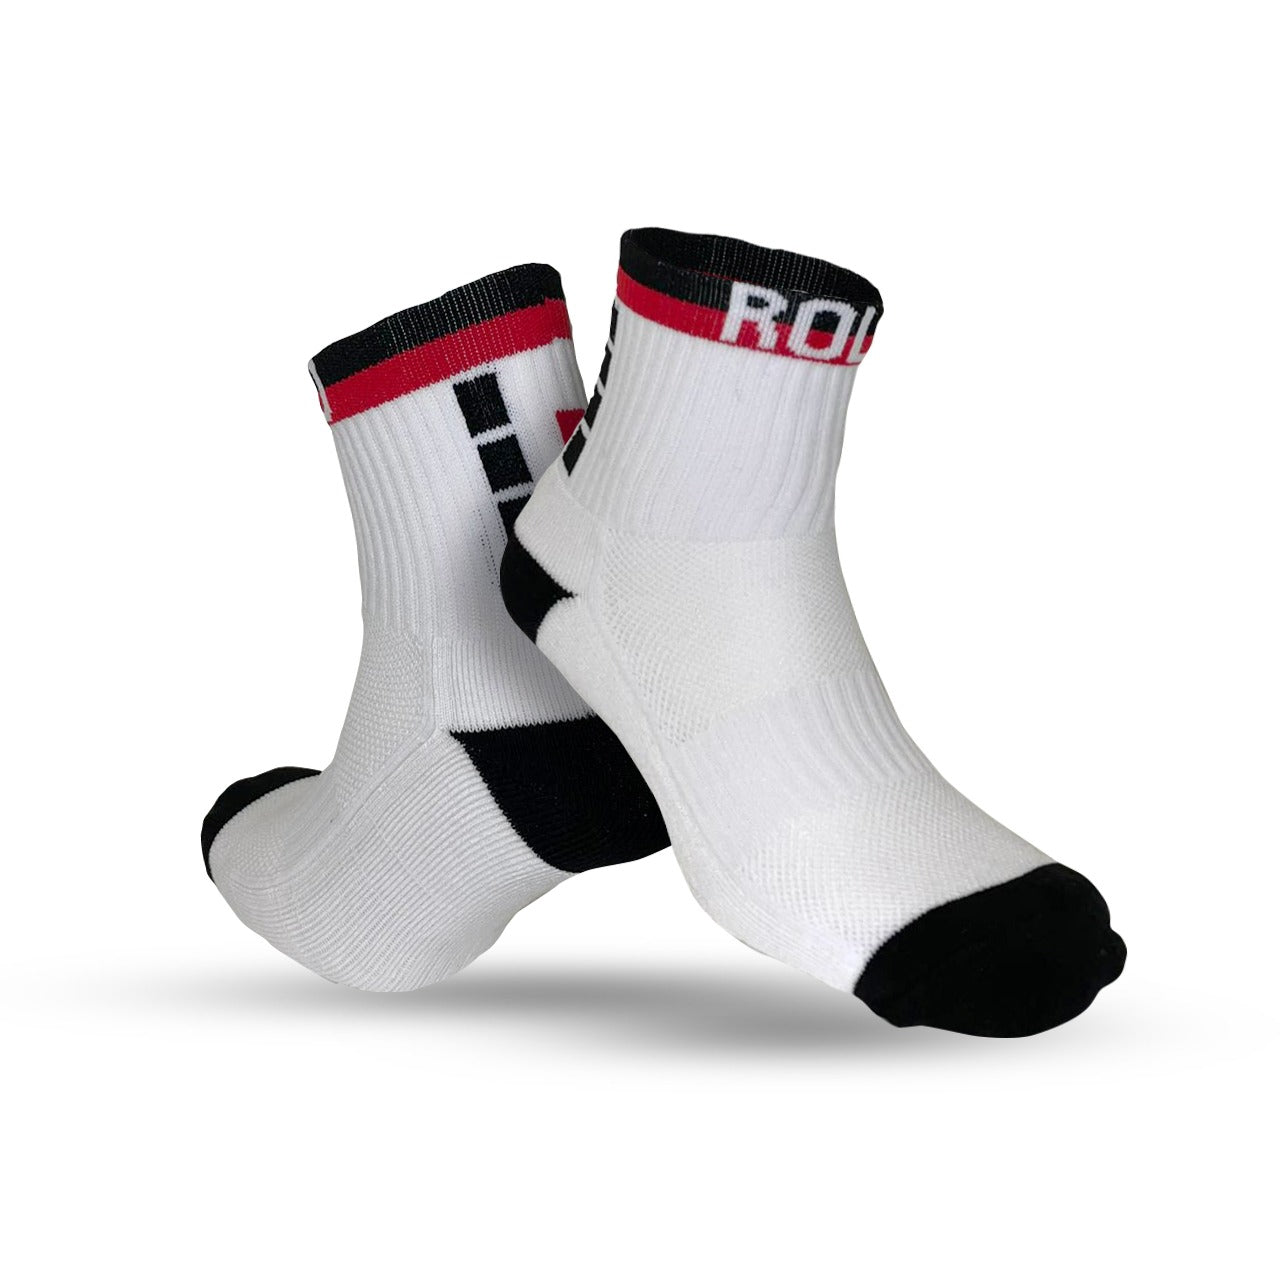 Rolo Sports - Performance Socks, Work Wear and Team Wear